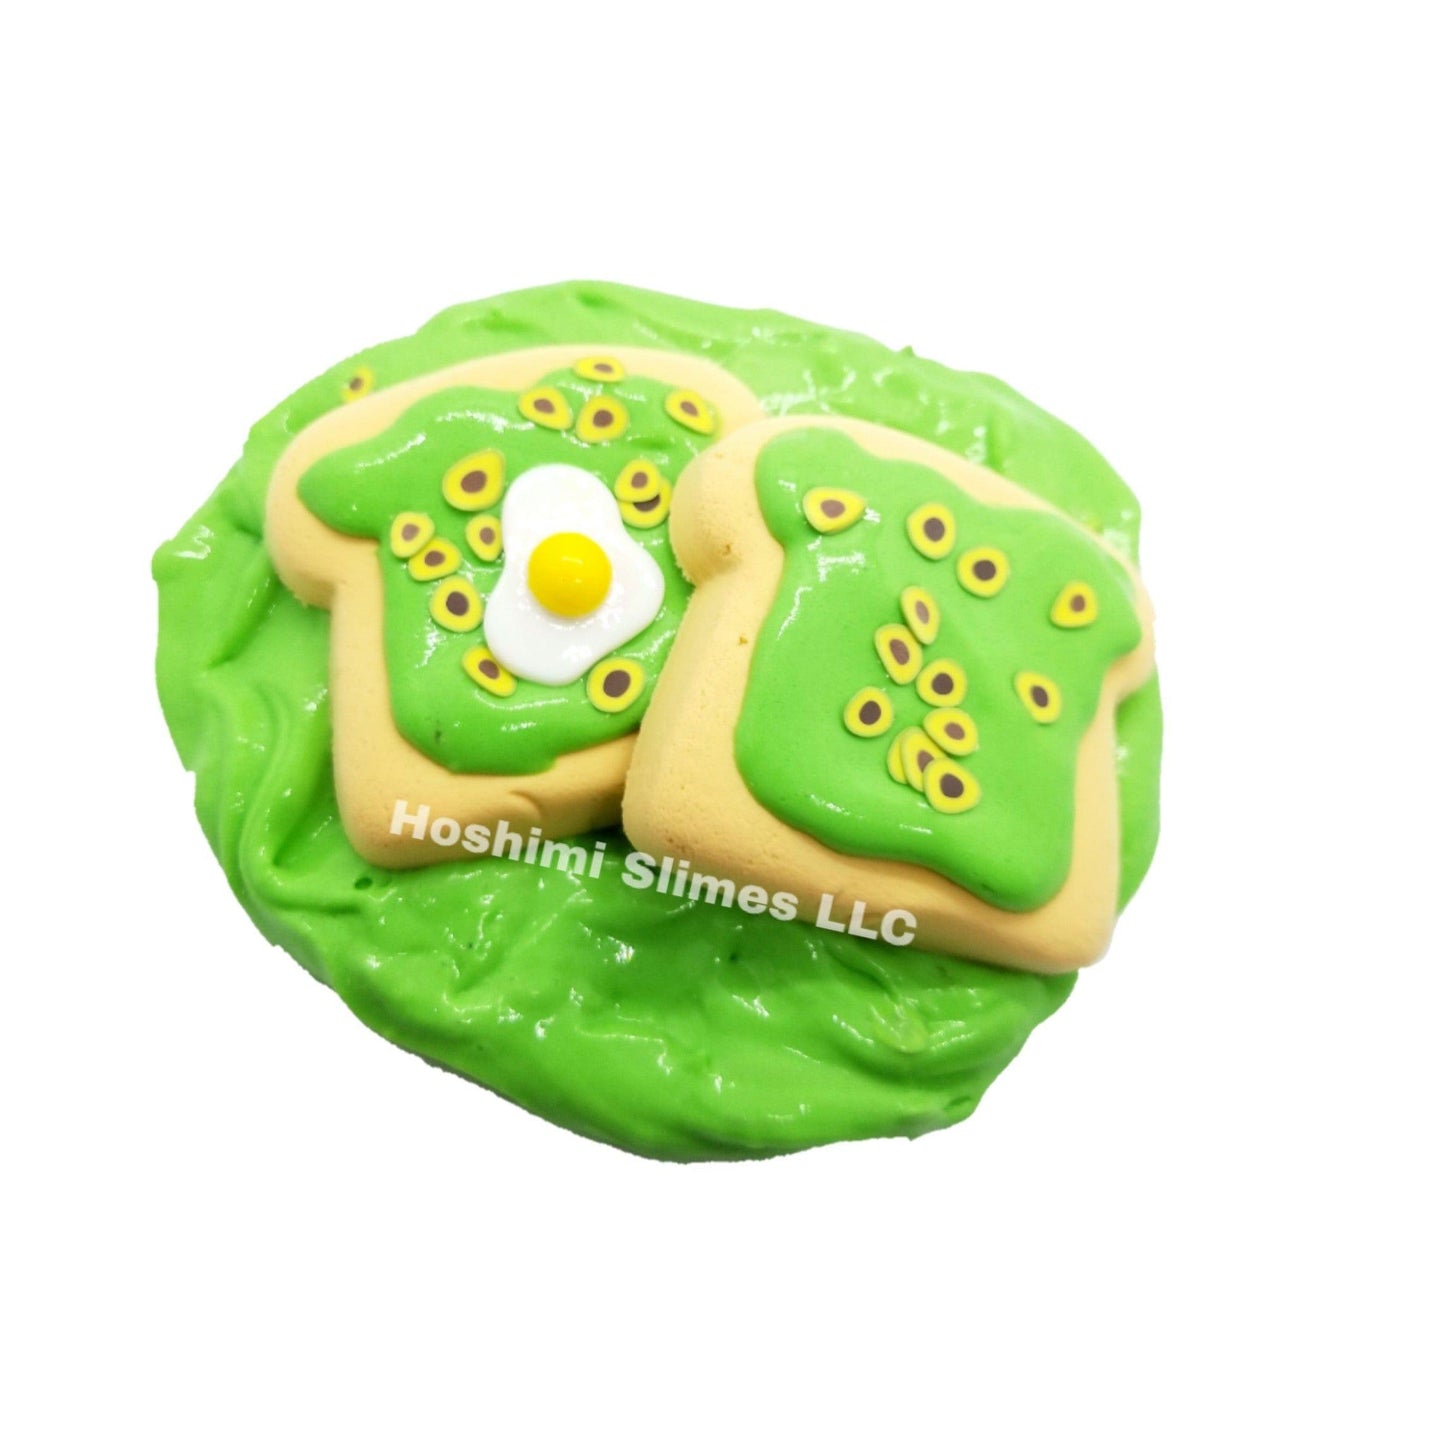 Avocado & Toast DIY Kit Slime by Hoshimi Slimes LLC | Hoshimi Slimes LLC